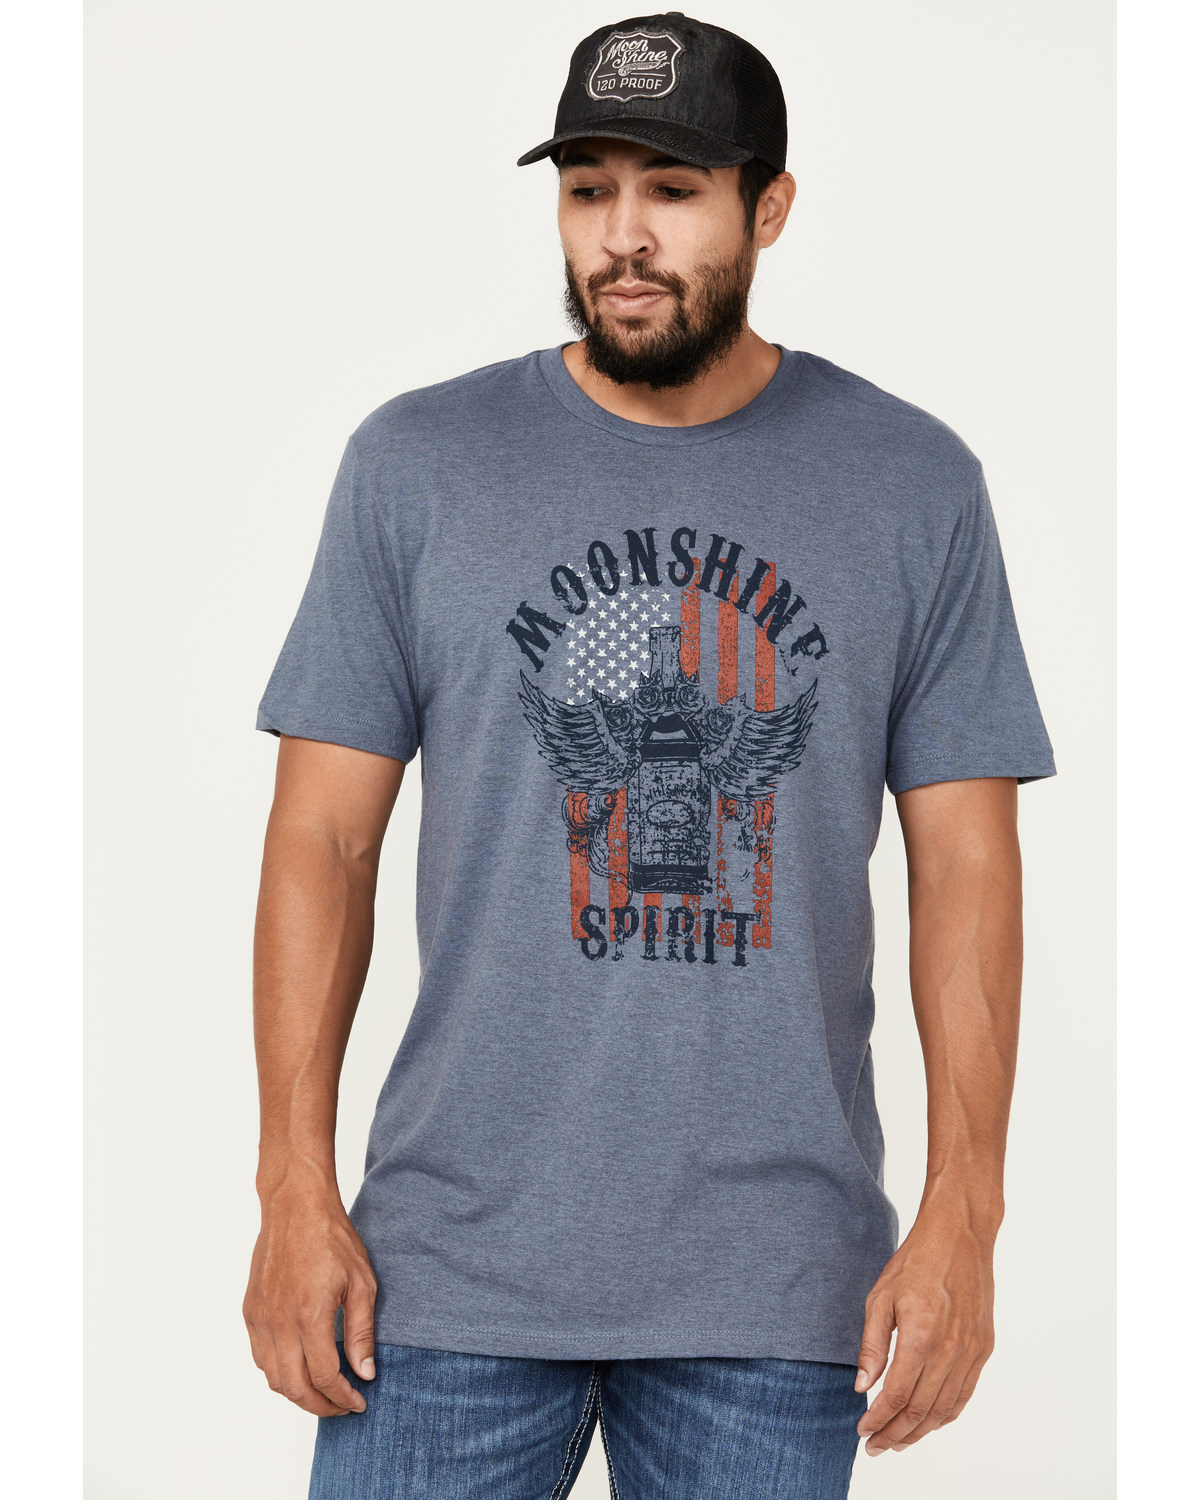 Moonshine Spirit Men's Winged Bottle Short Sleeve Graphic T-Shirt